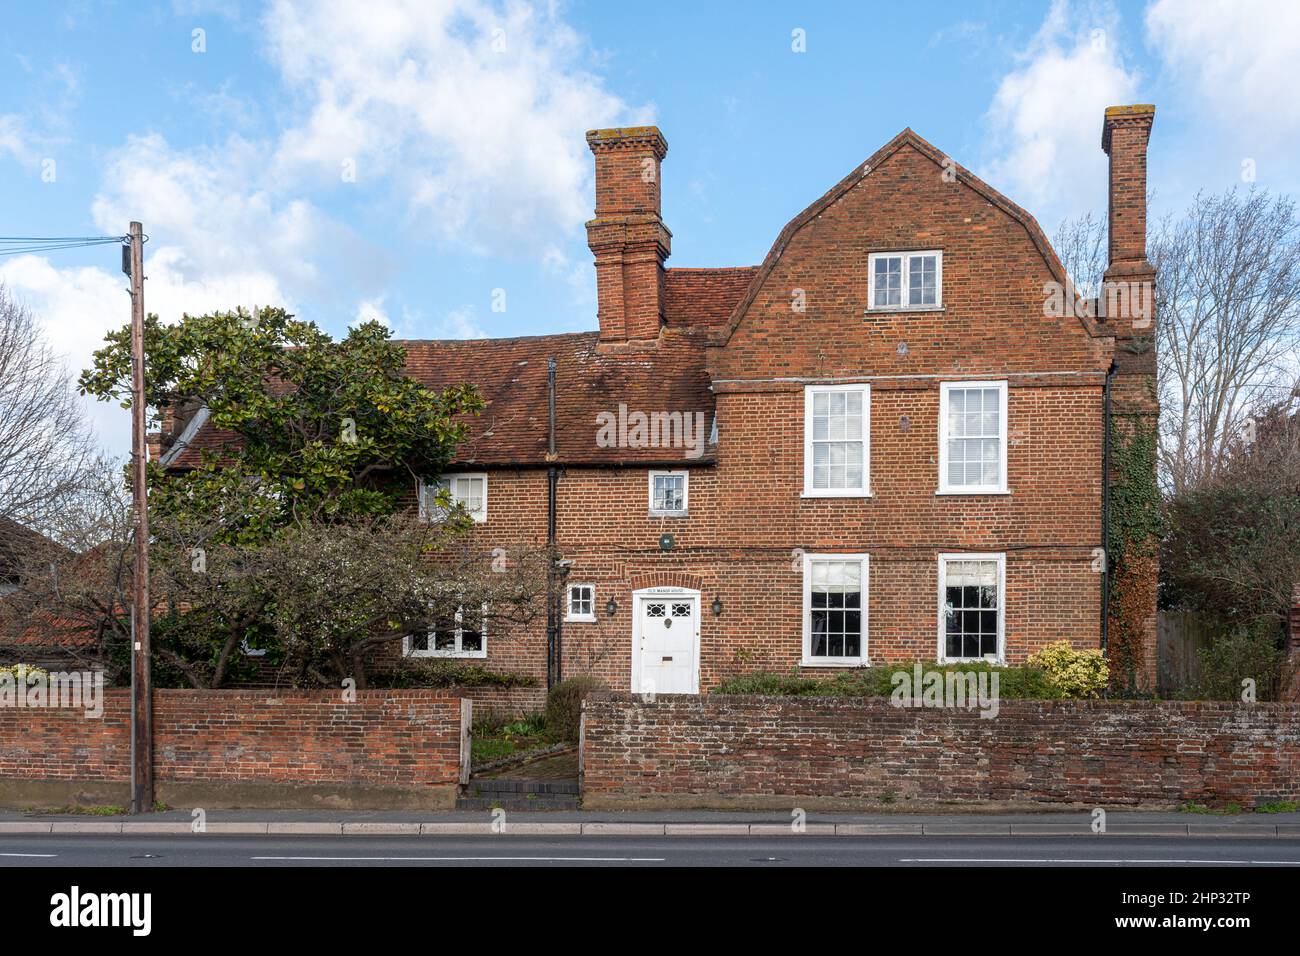 The Old Manor House on High Street, Old Woking village, Surrey, Angleterre, Royaume-Uni, Un bâtiment classé de grade II* construit sur le 17th siècle Banque D'Images